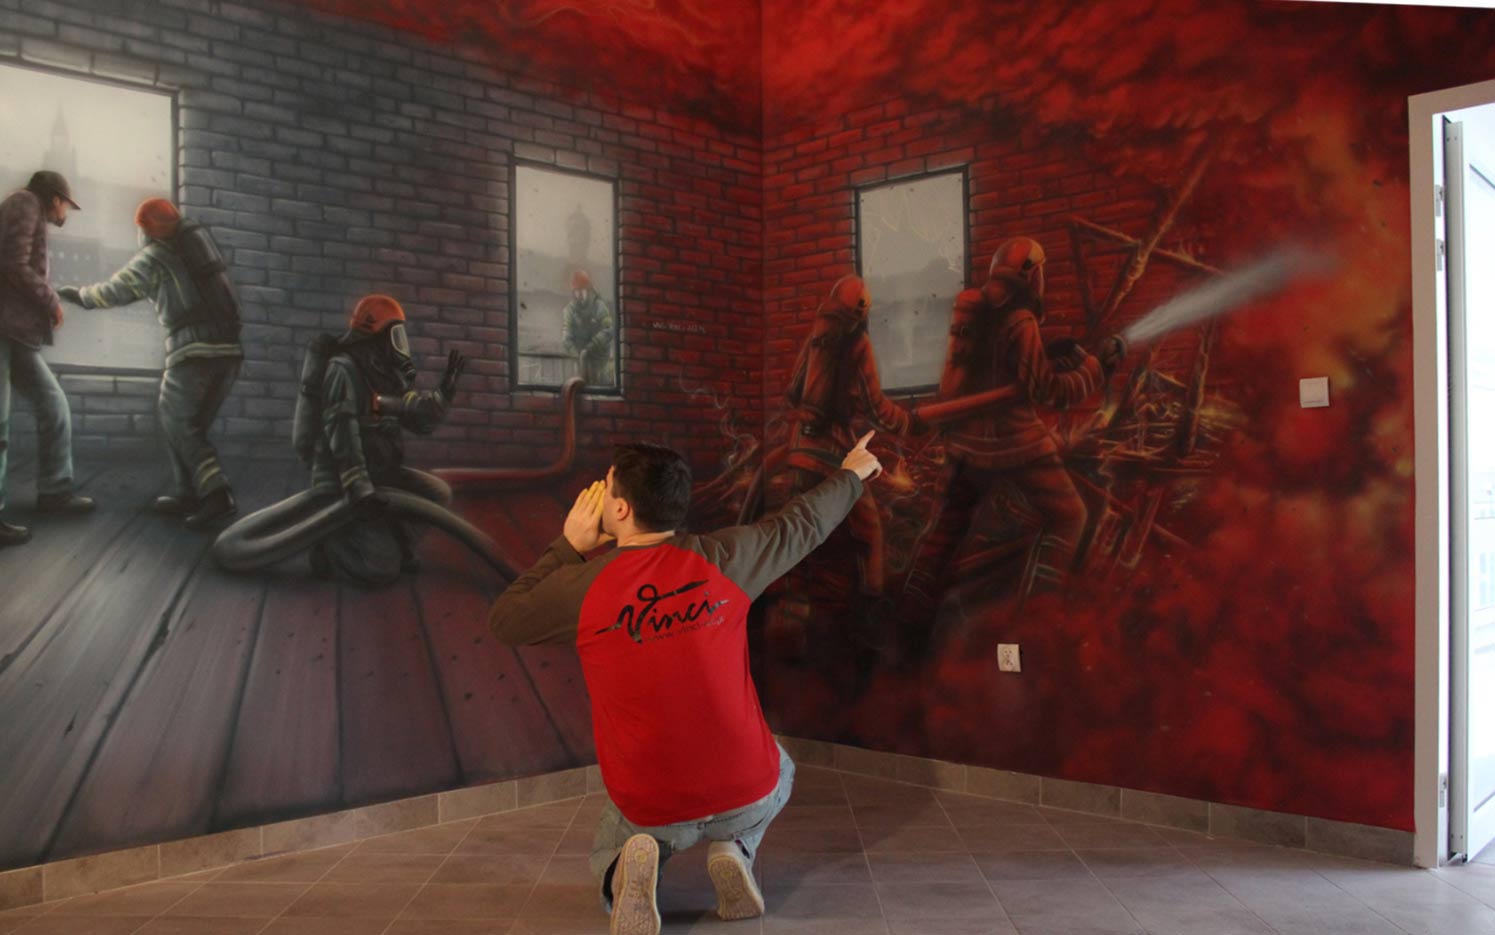 straż pożarna, malowidło na ścianie, mural